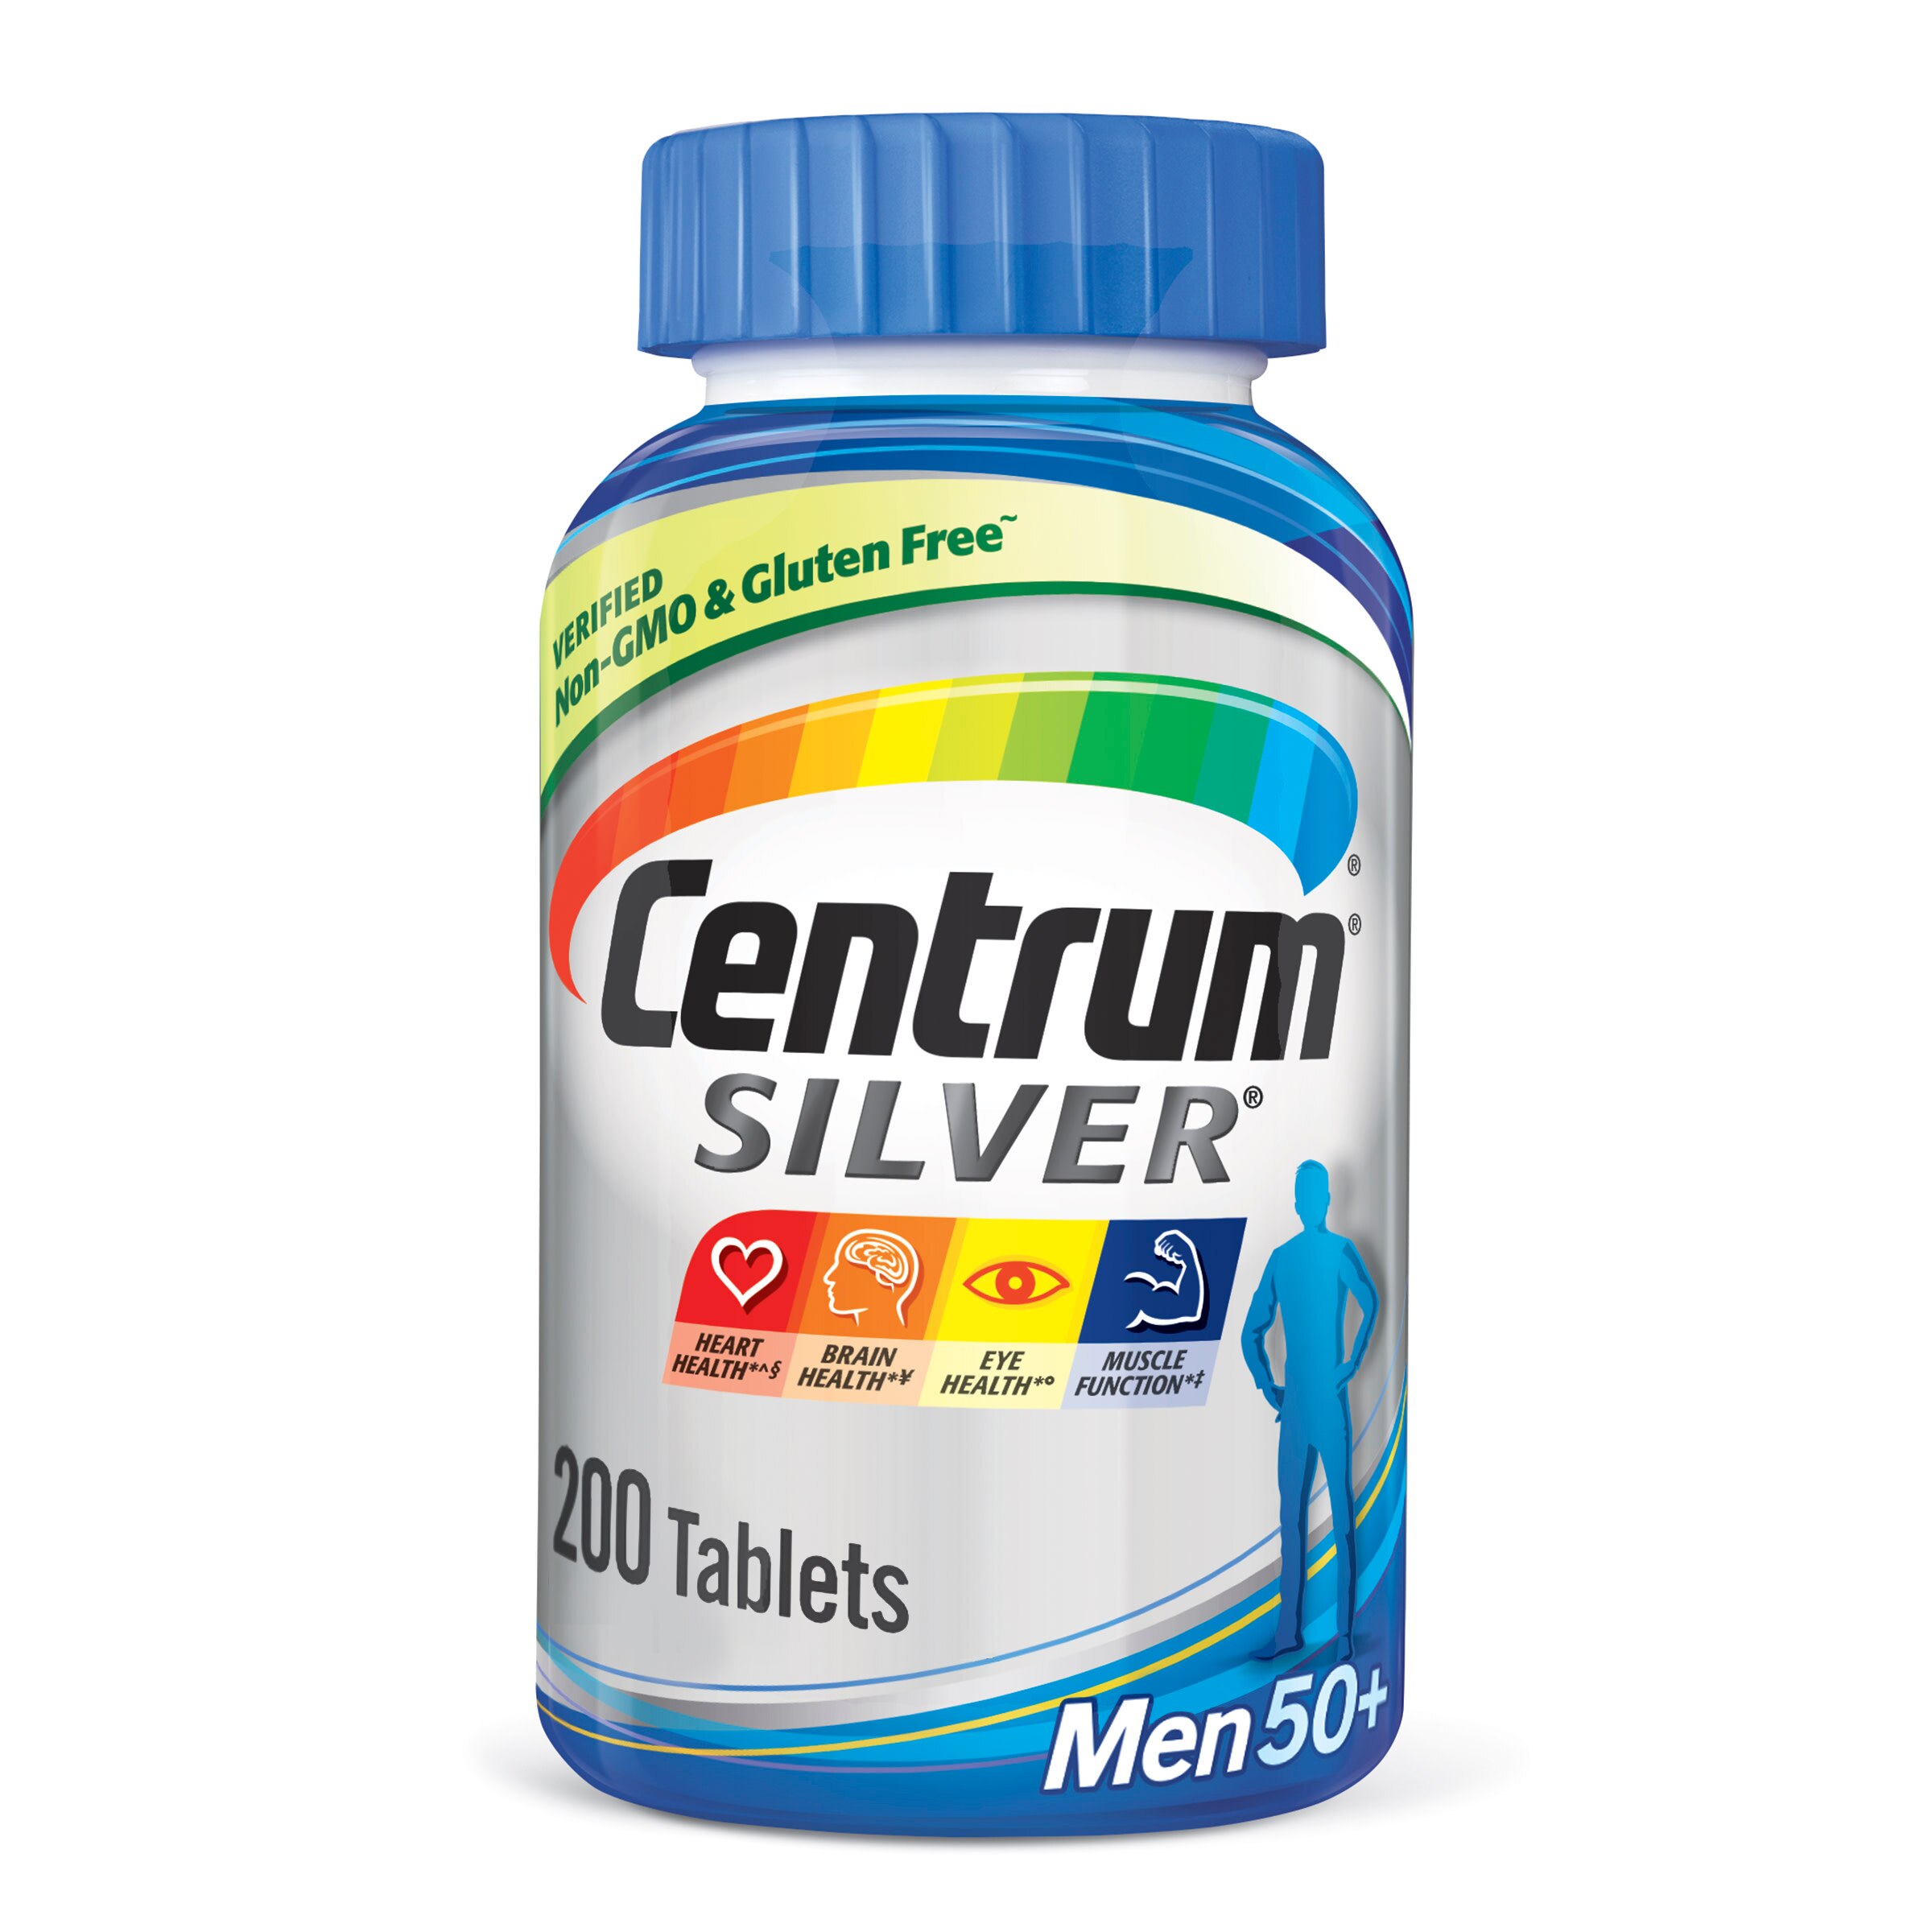 Centrum Silver Multivitamin for Men 50+ Tablets, 200 CT